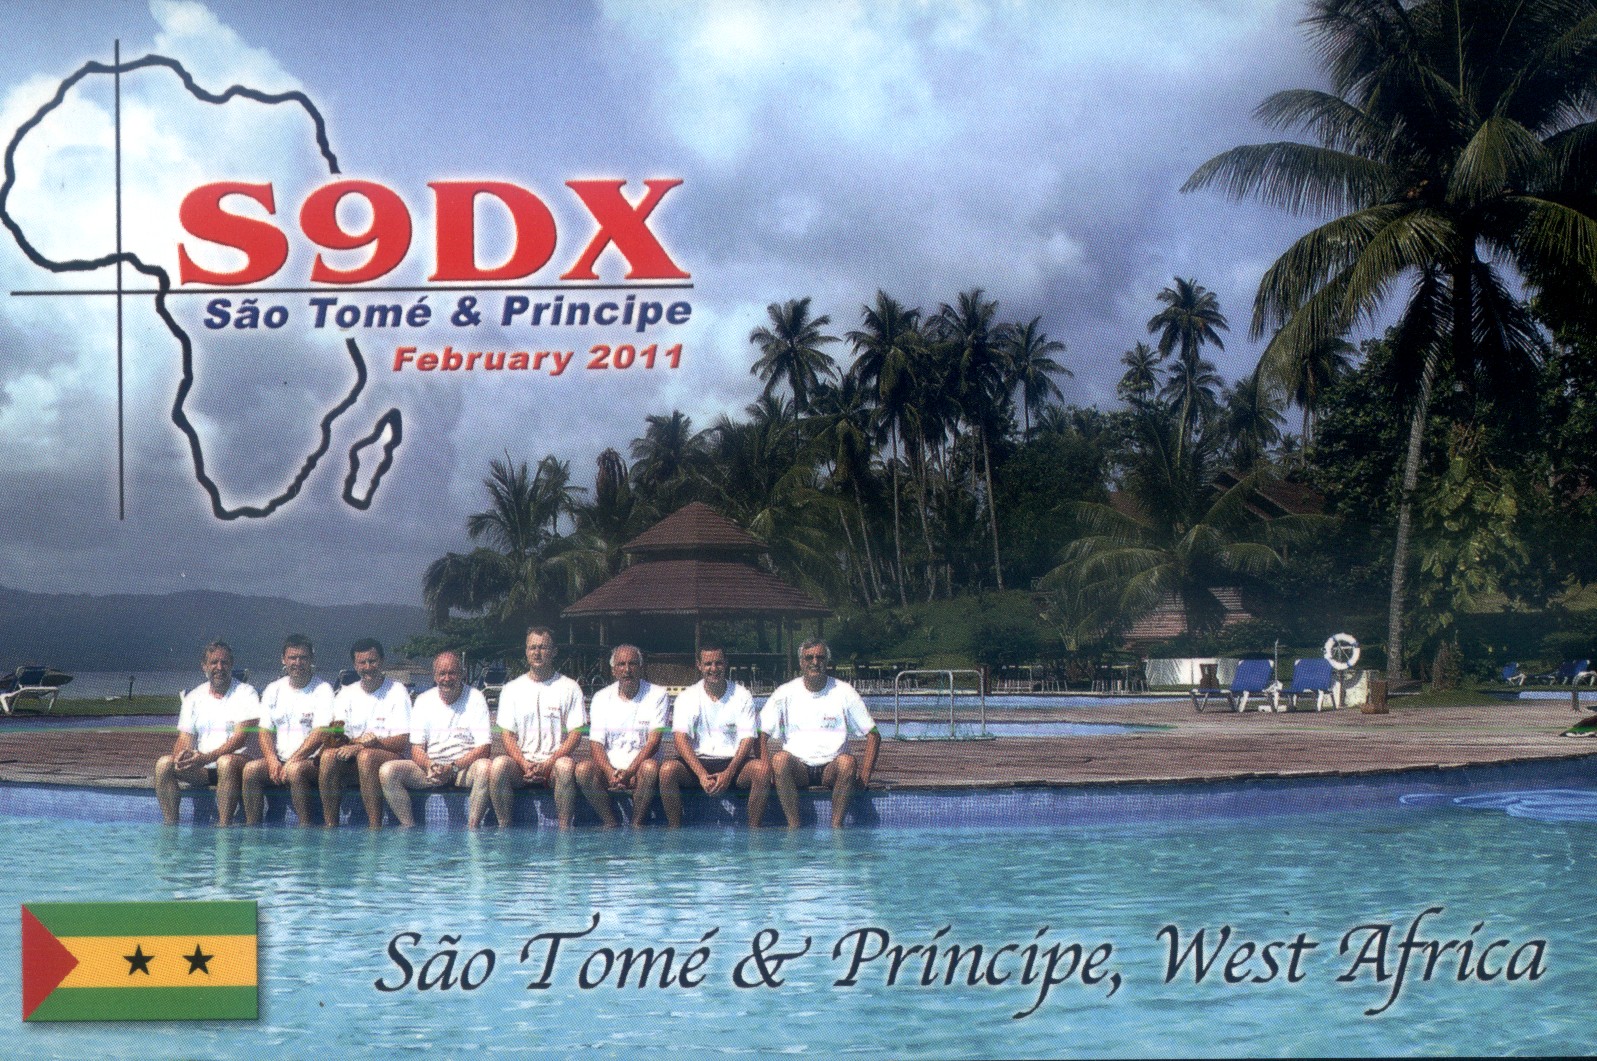 Sao Tome & Principe S9DX